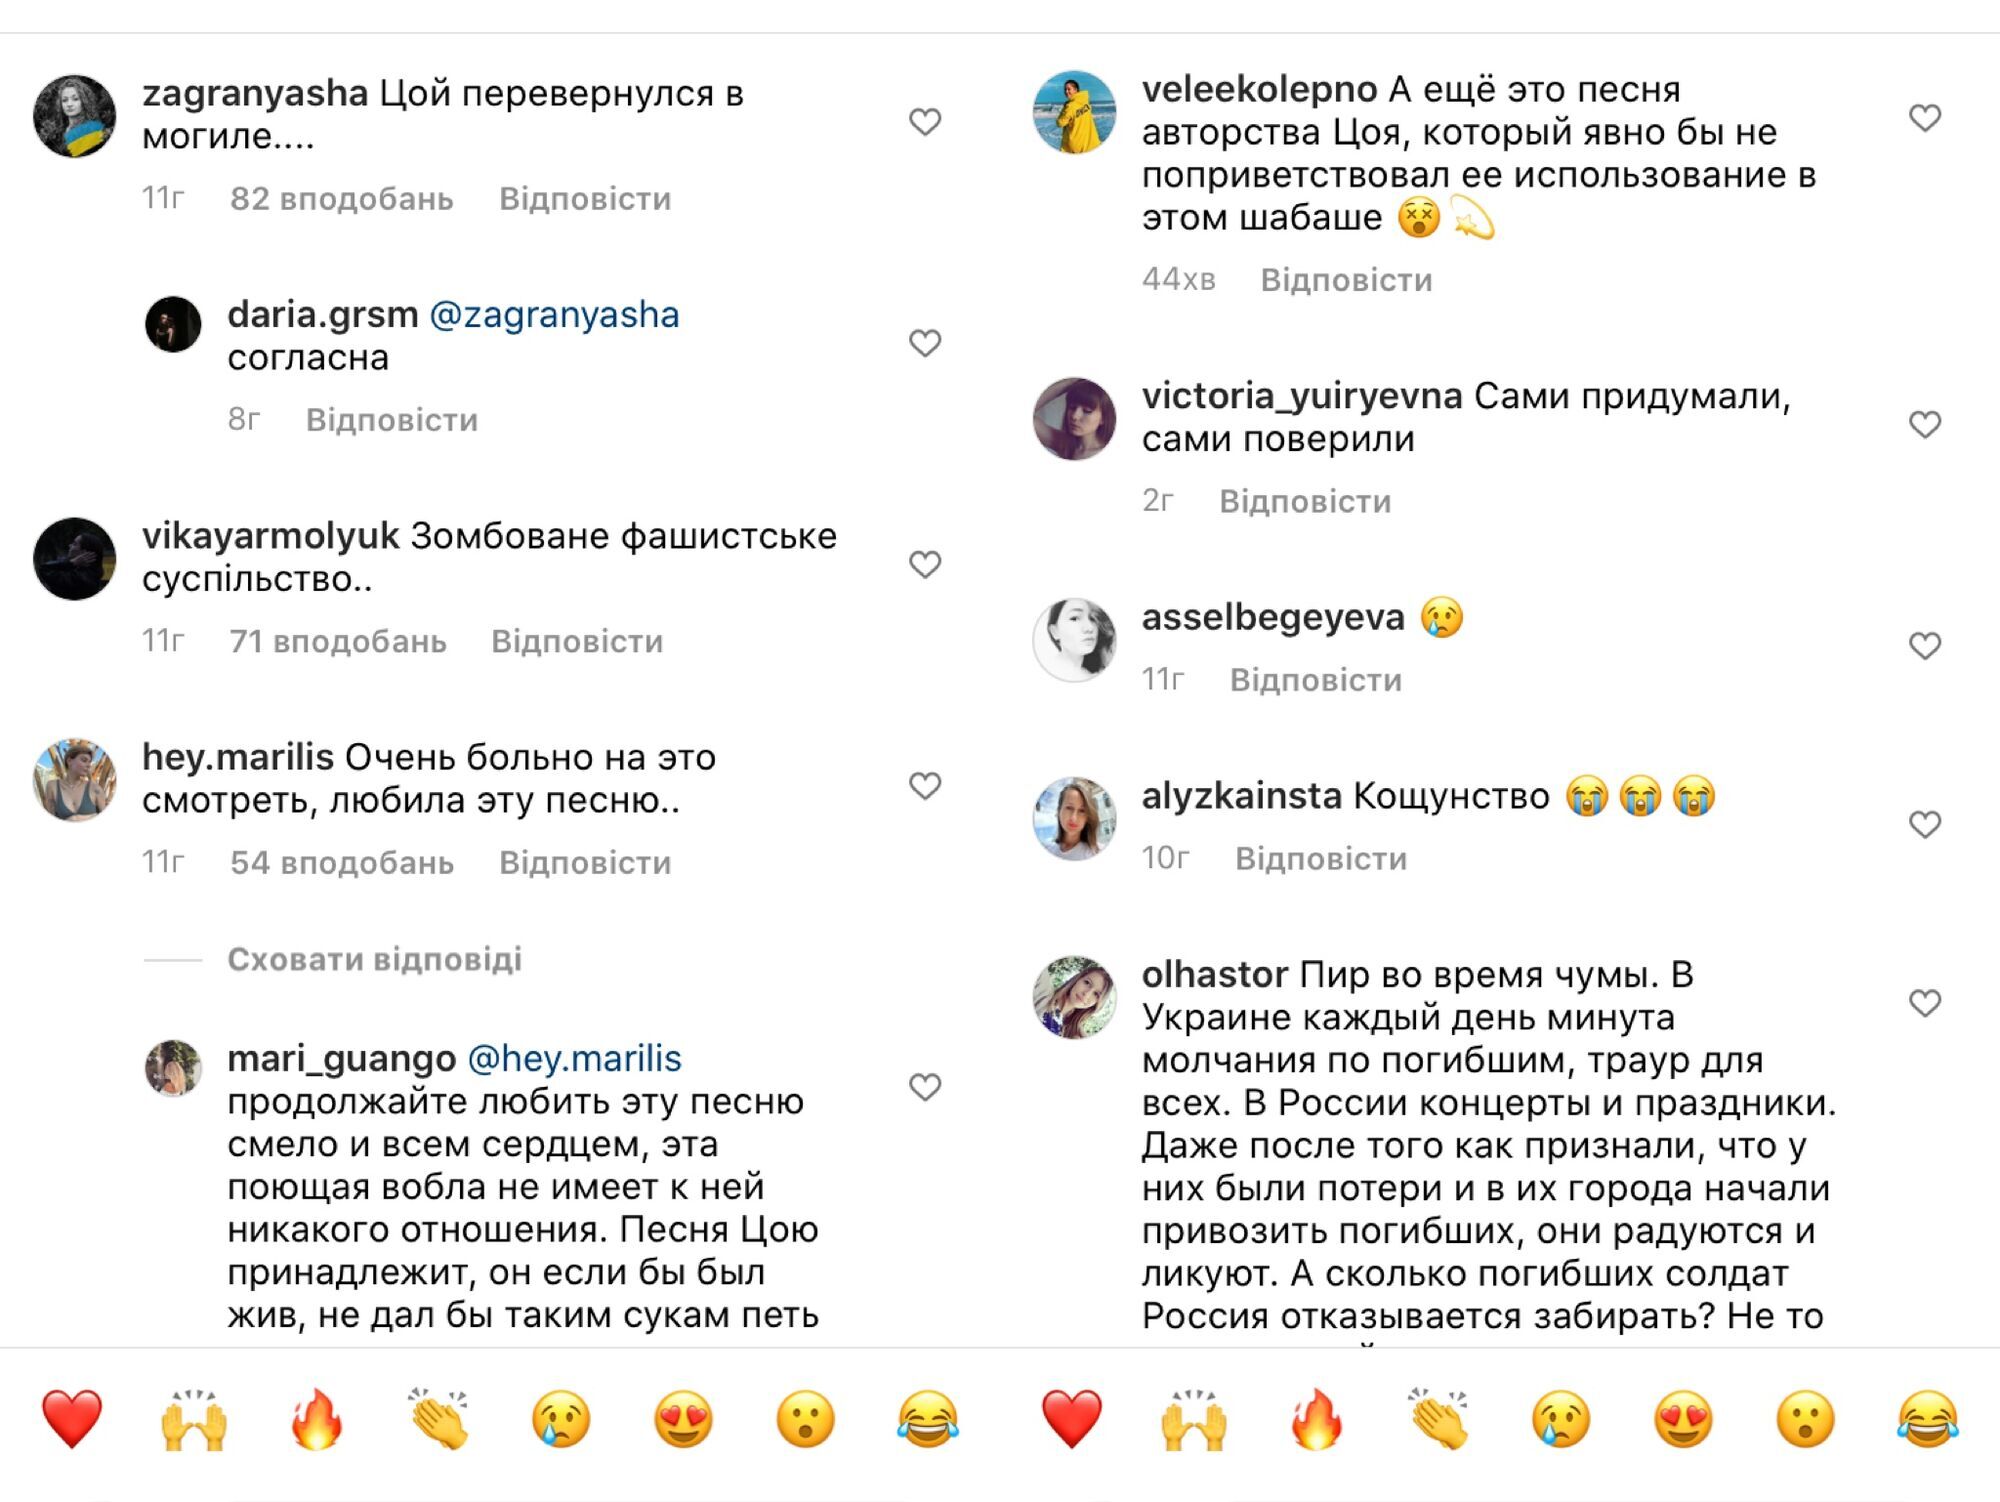 Комментарии под видео с концерта-митинга "Крымская весна"